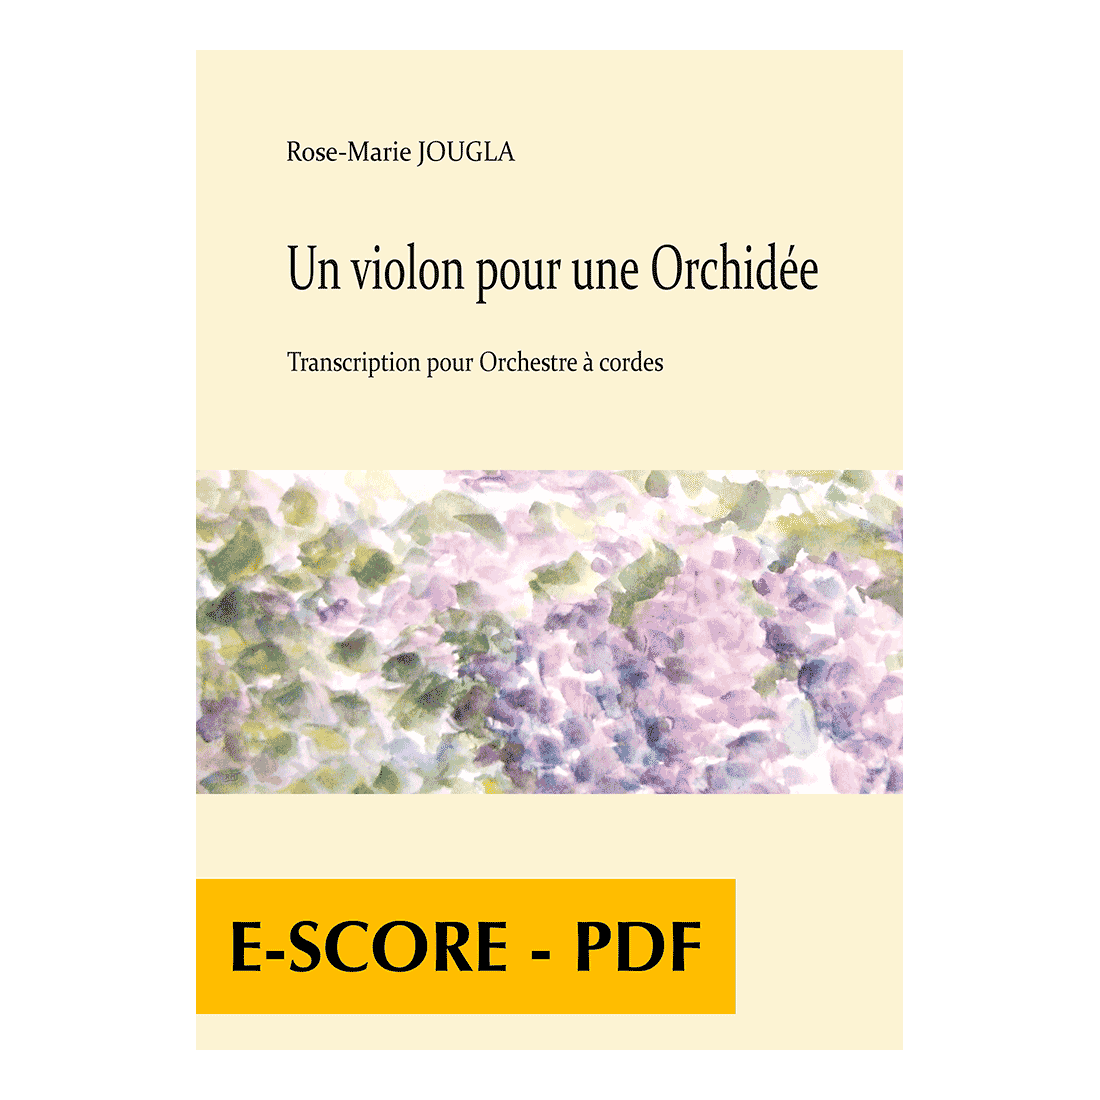 Un violon pour une Orchidée für Streichorchestra (FULL SCORE) - E-score PDF